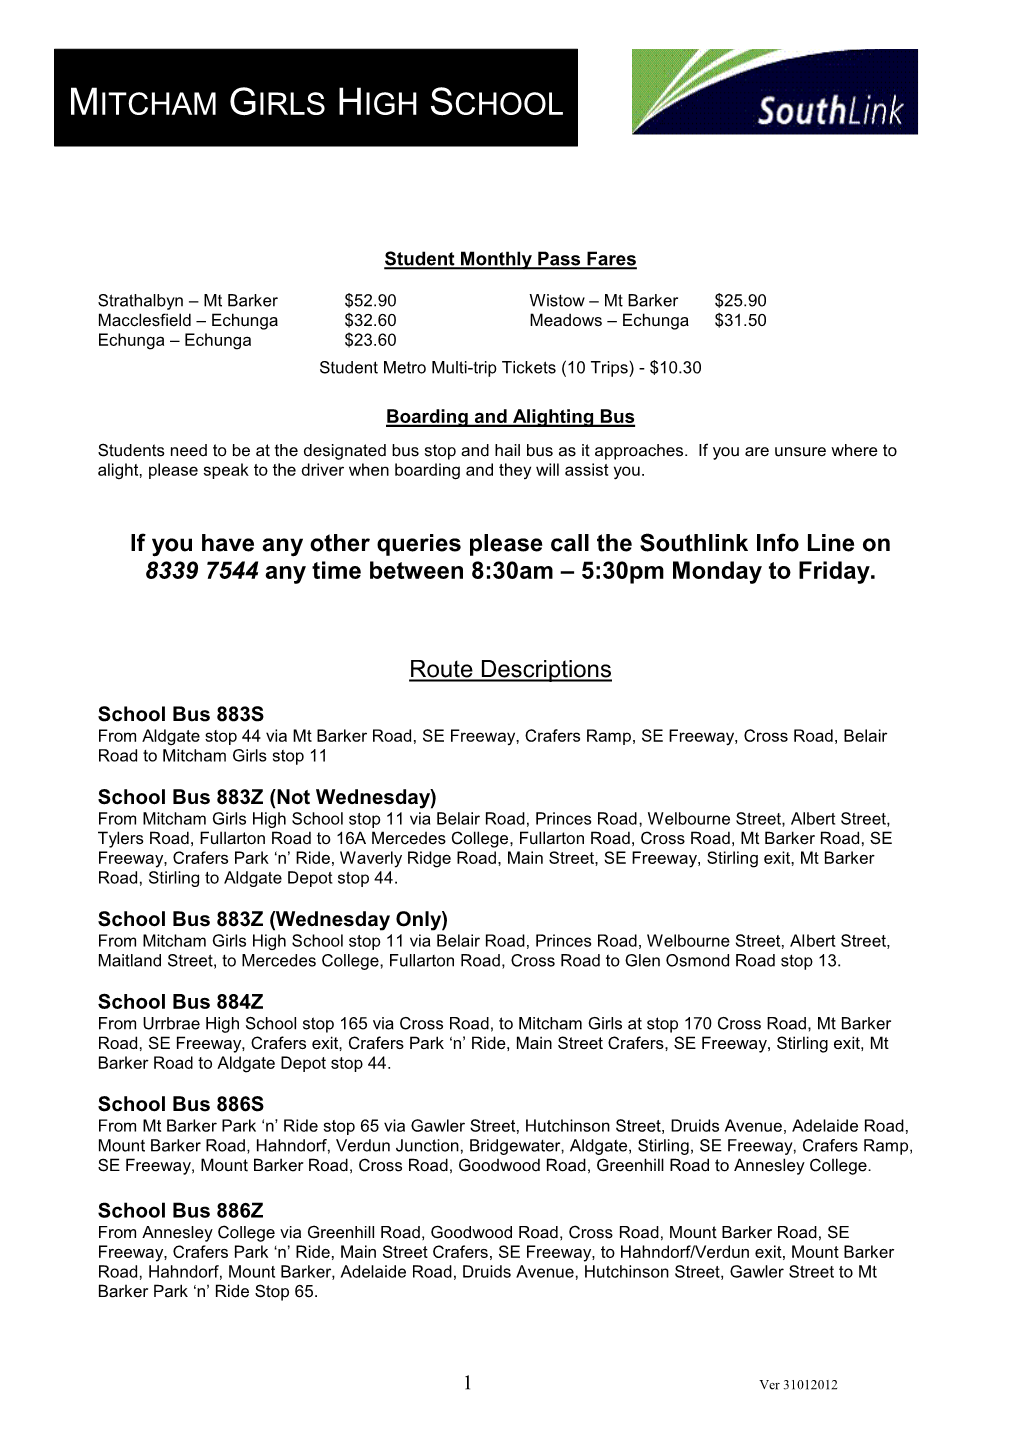 Route Description & Am/Pm Timetable